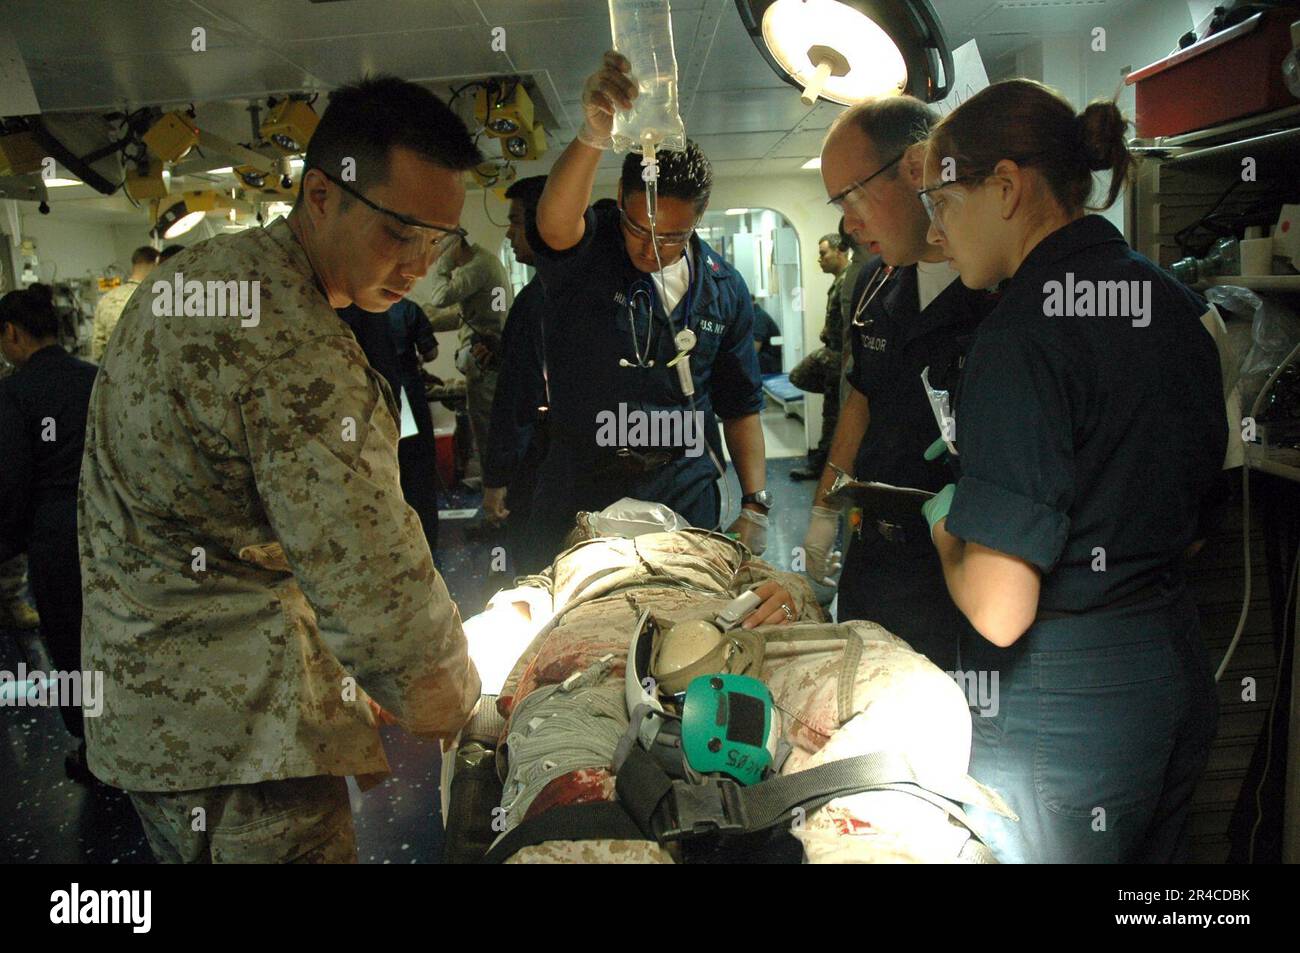 US Navy Mitglieder des medizinischen Teams der Expeditionary Strike Group Five (ESG-5), die der USS Boxer (LHD 4) angeschlossen sind, evaluieren einen verwundeten Marine während einer Massenübung für Verletzte. Stockfoto